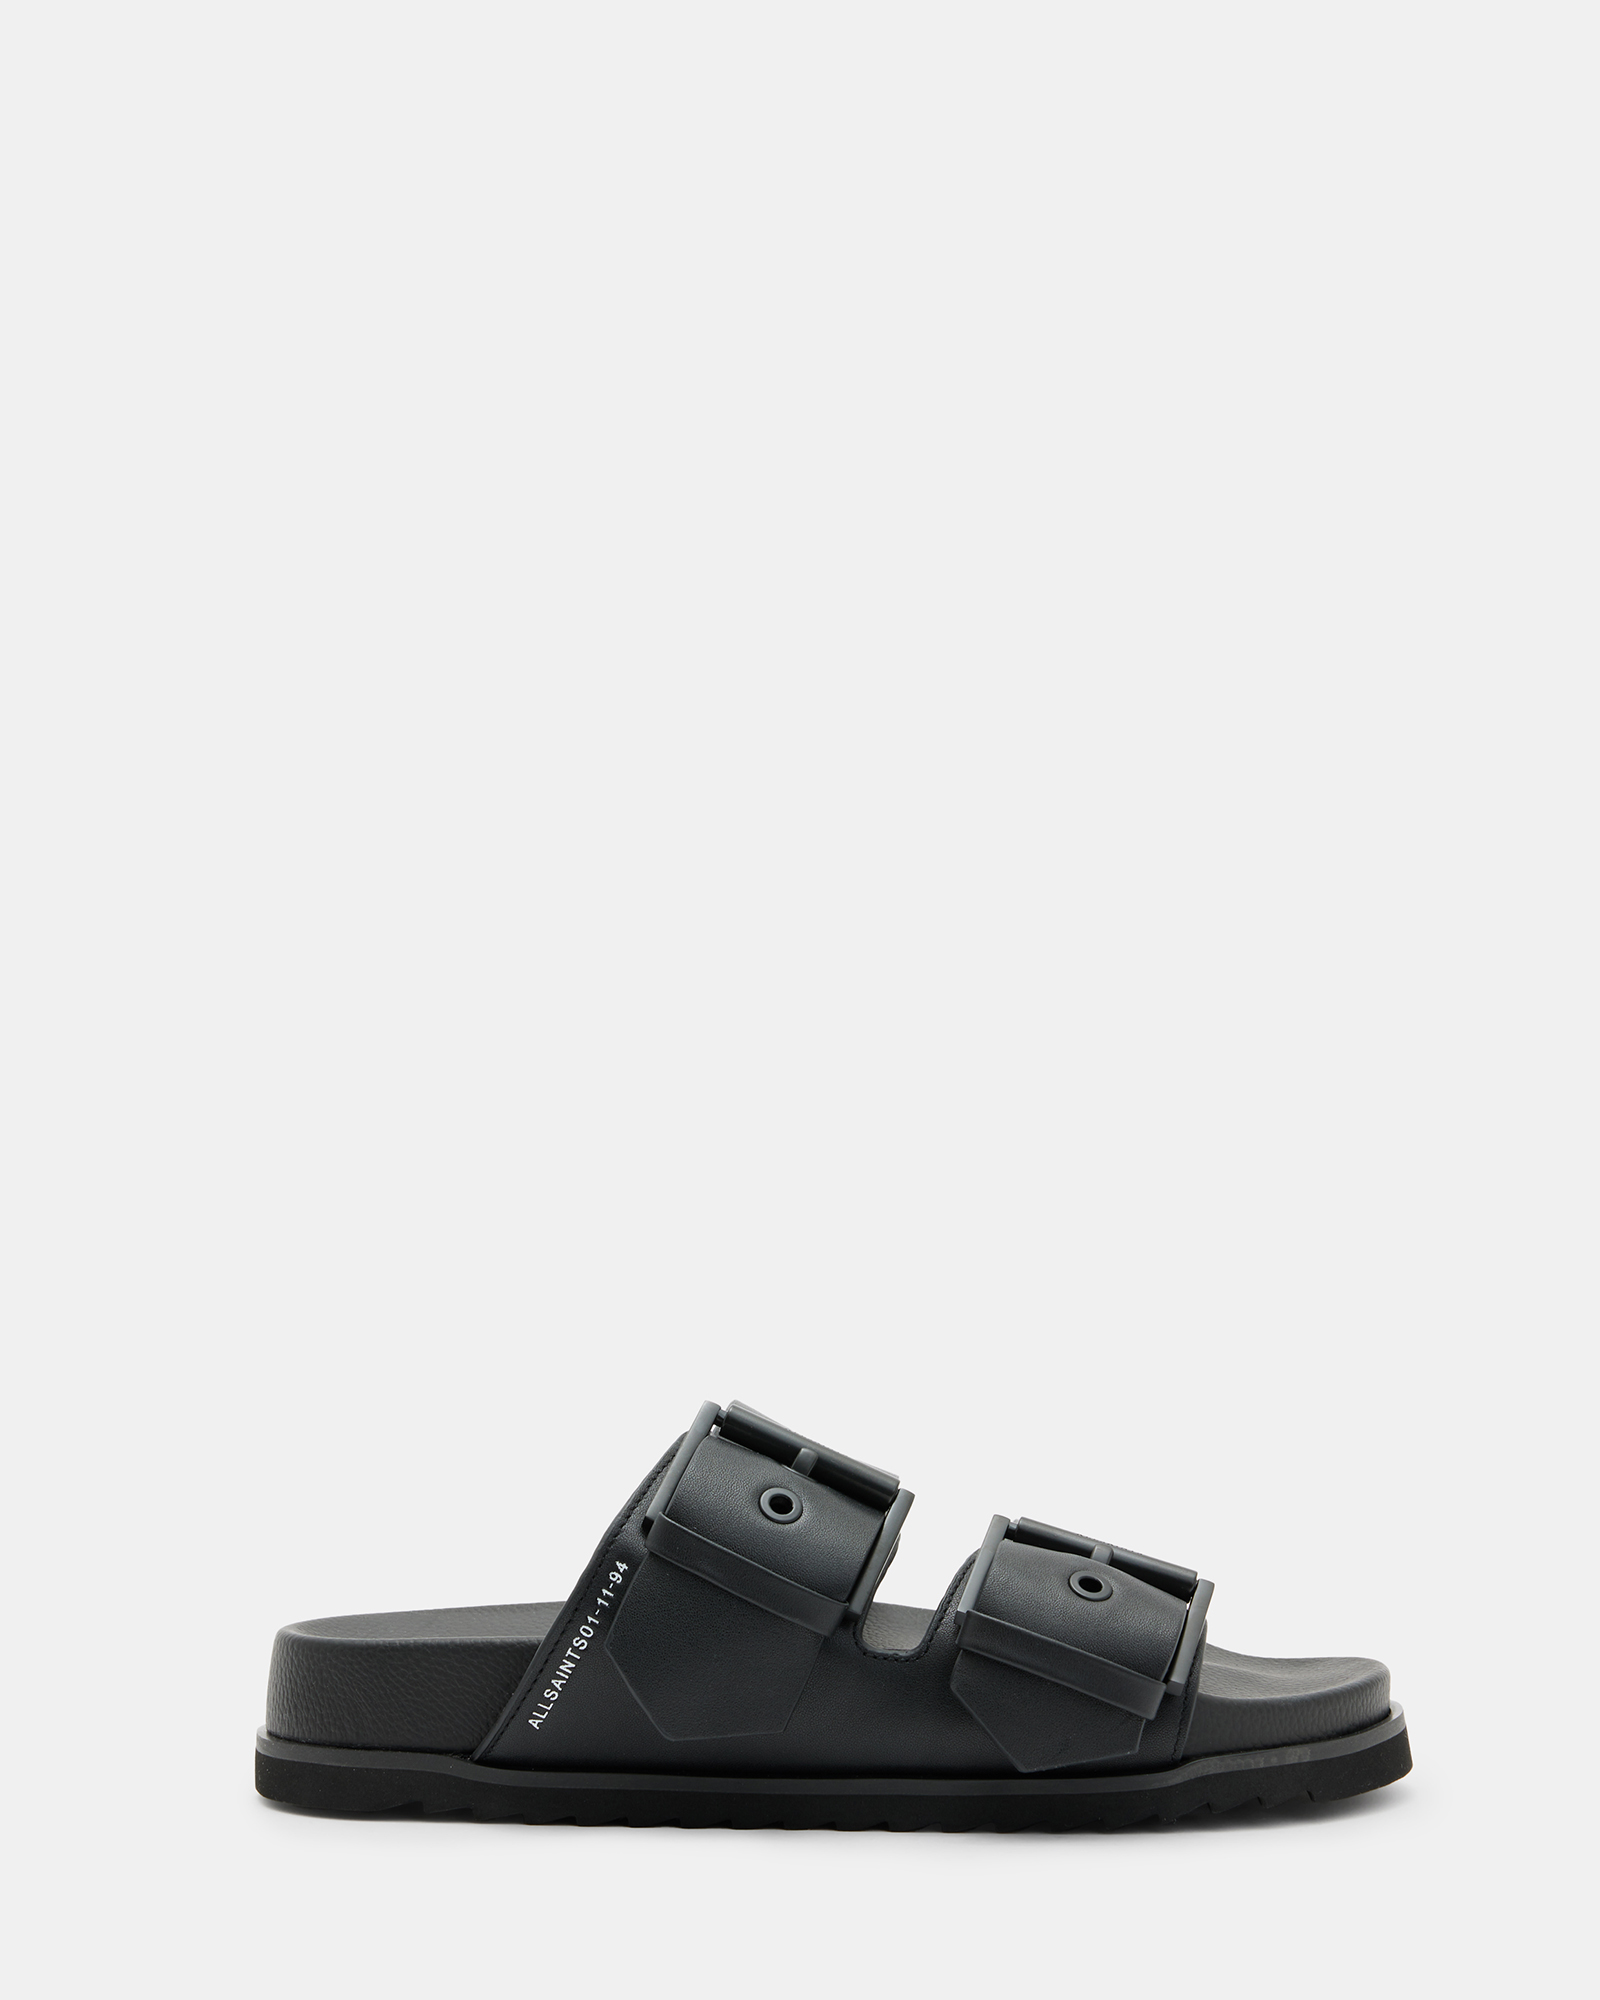 AllSaints Sian Leather Buckle Sandals,, Black